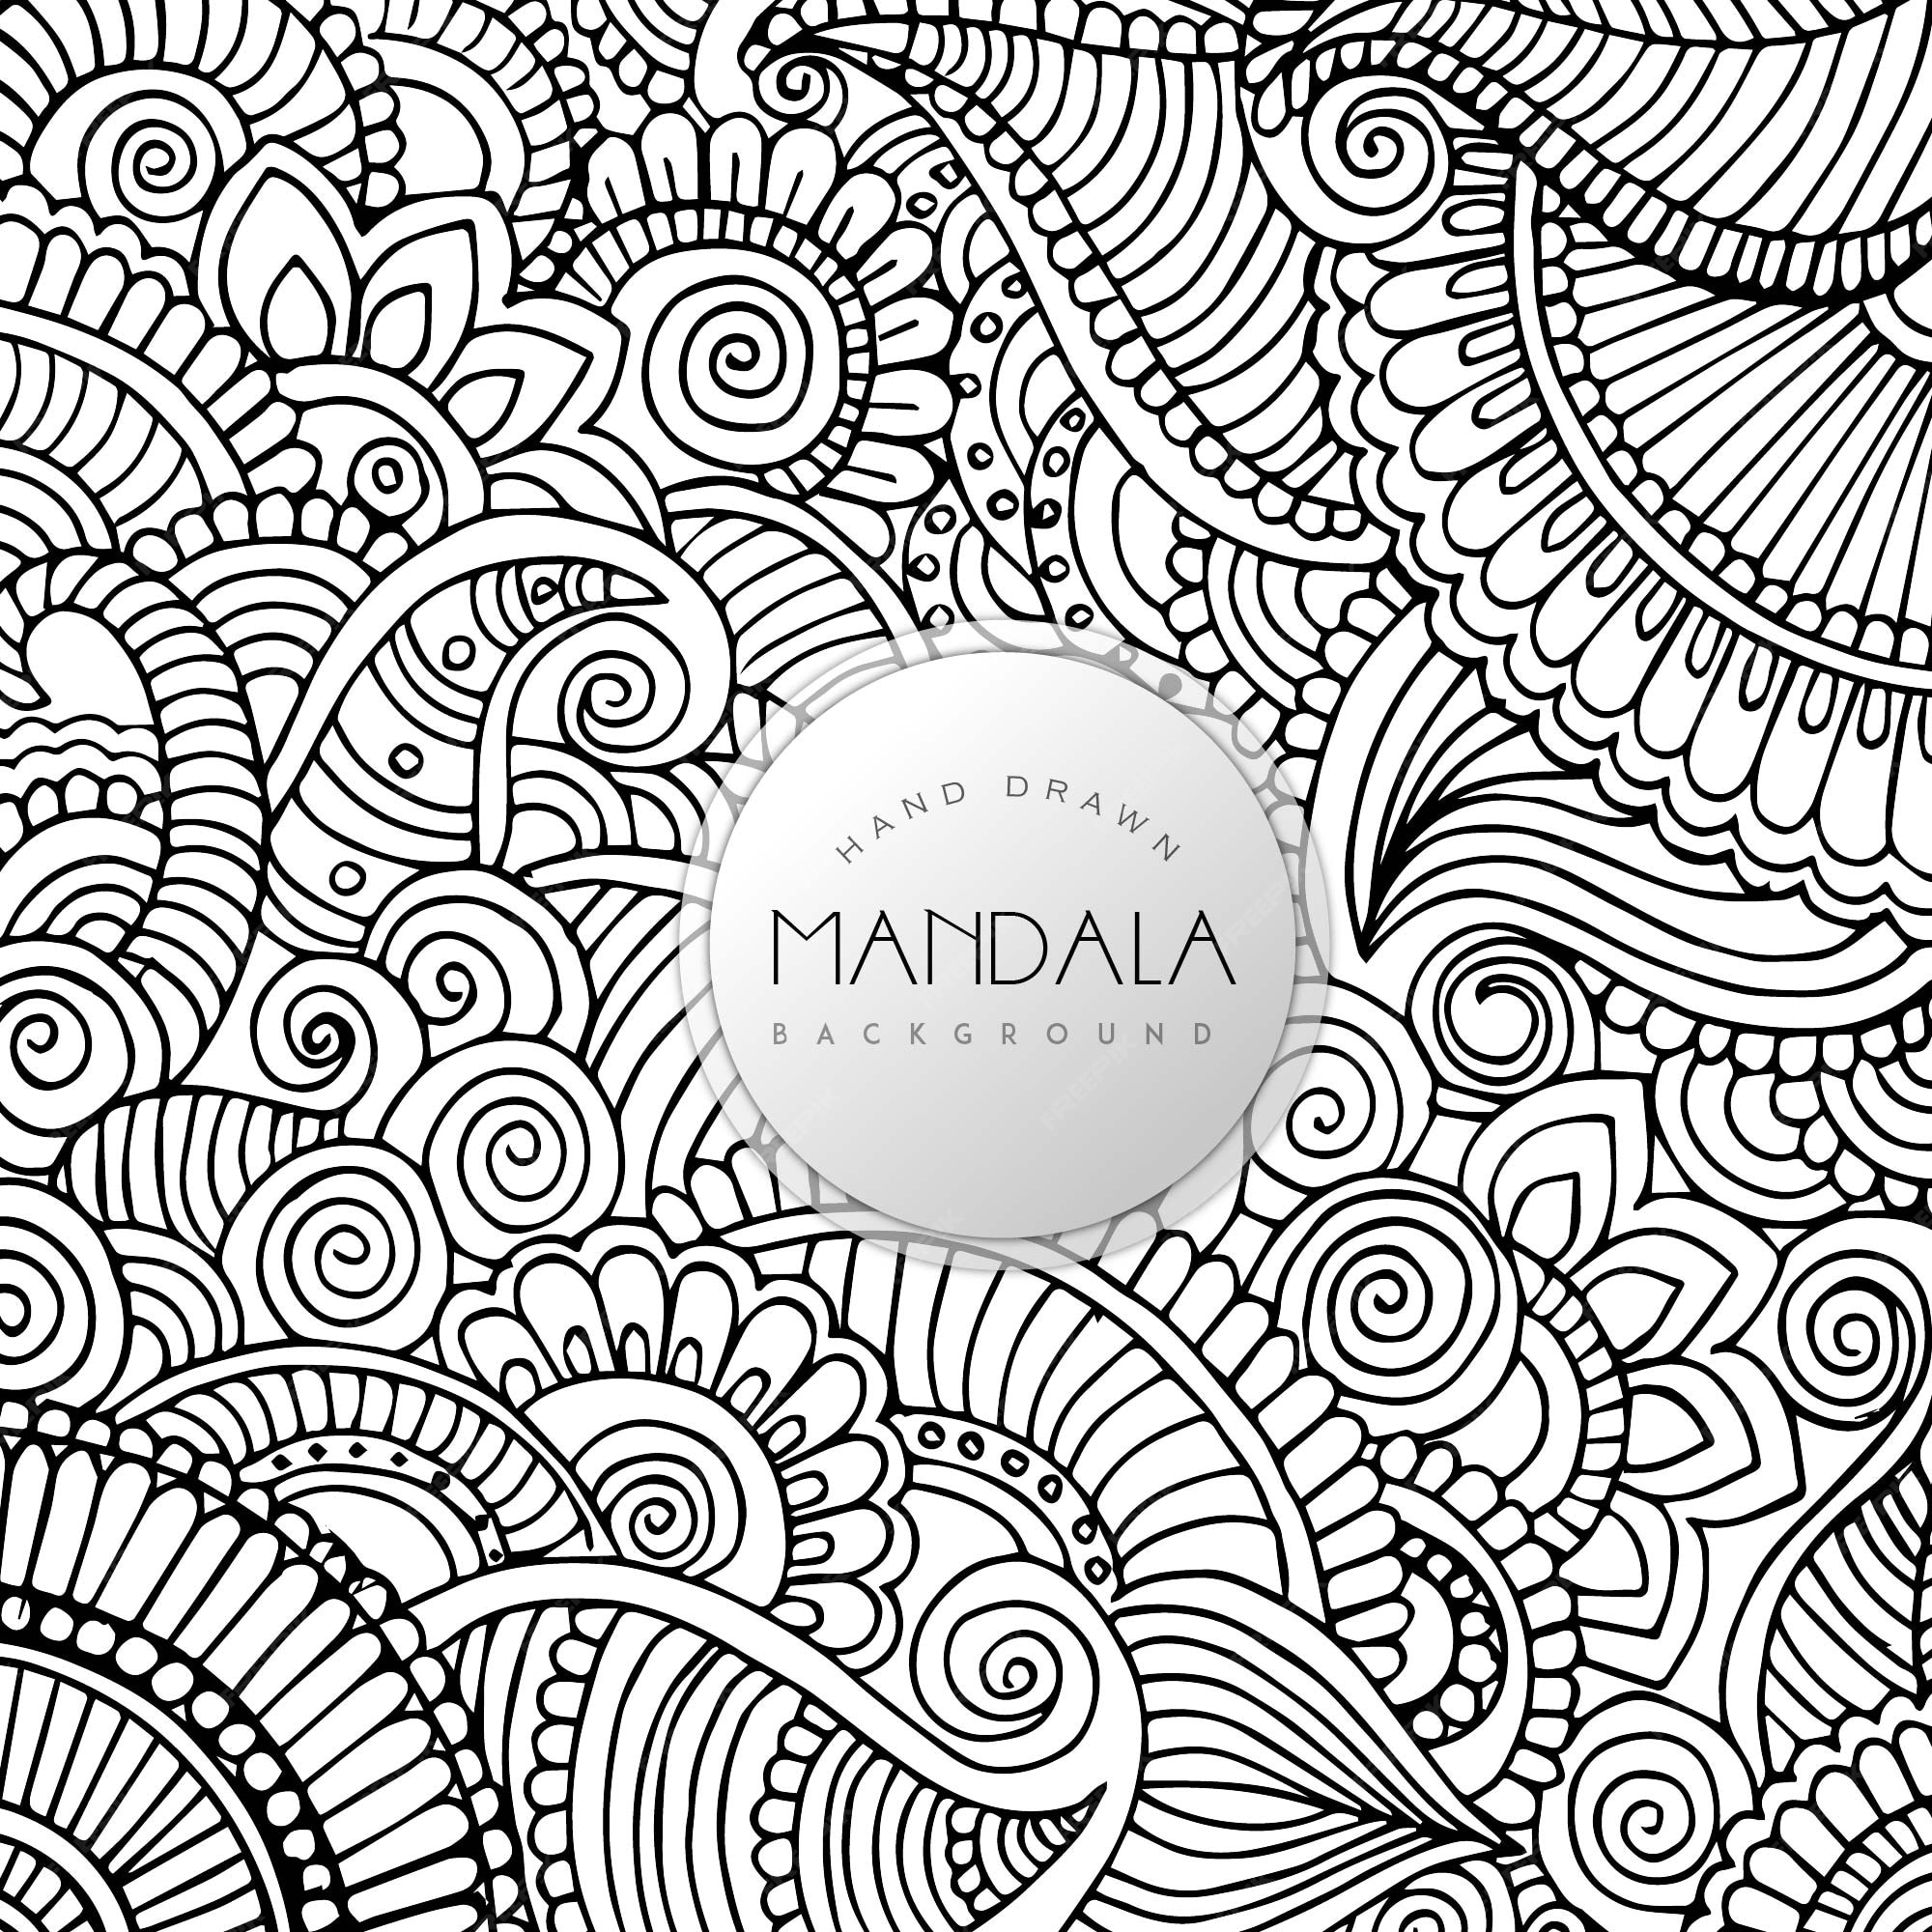 Details 200 mandala background black and white